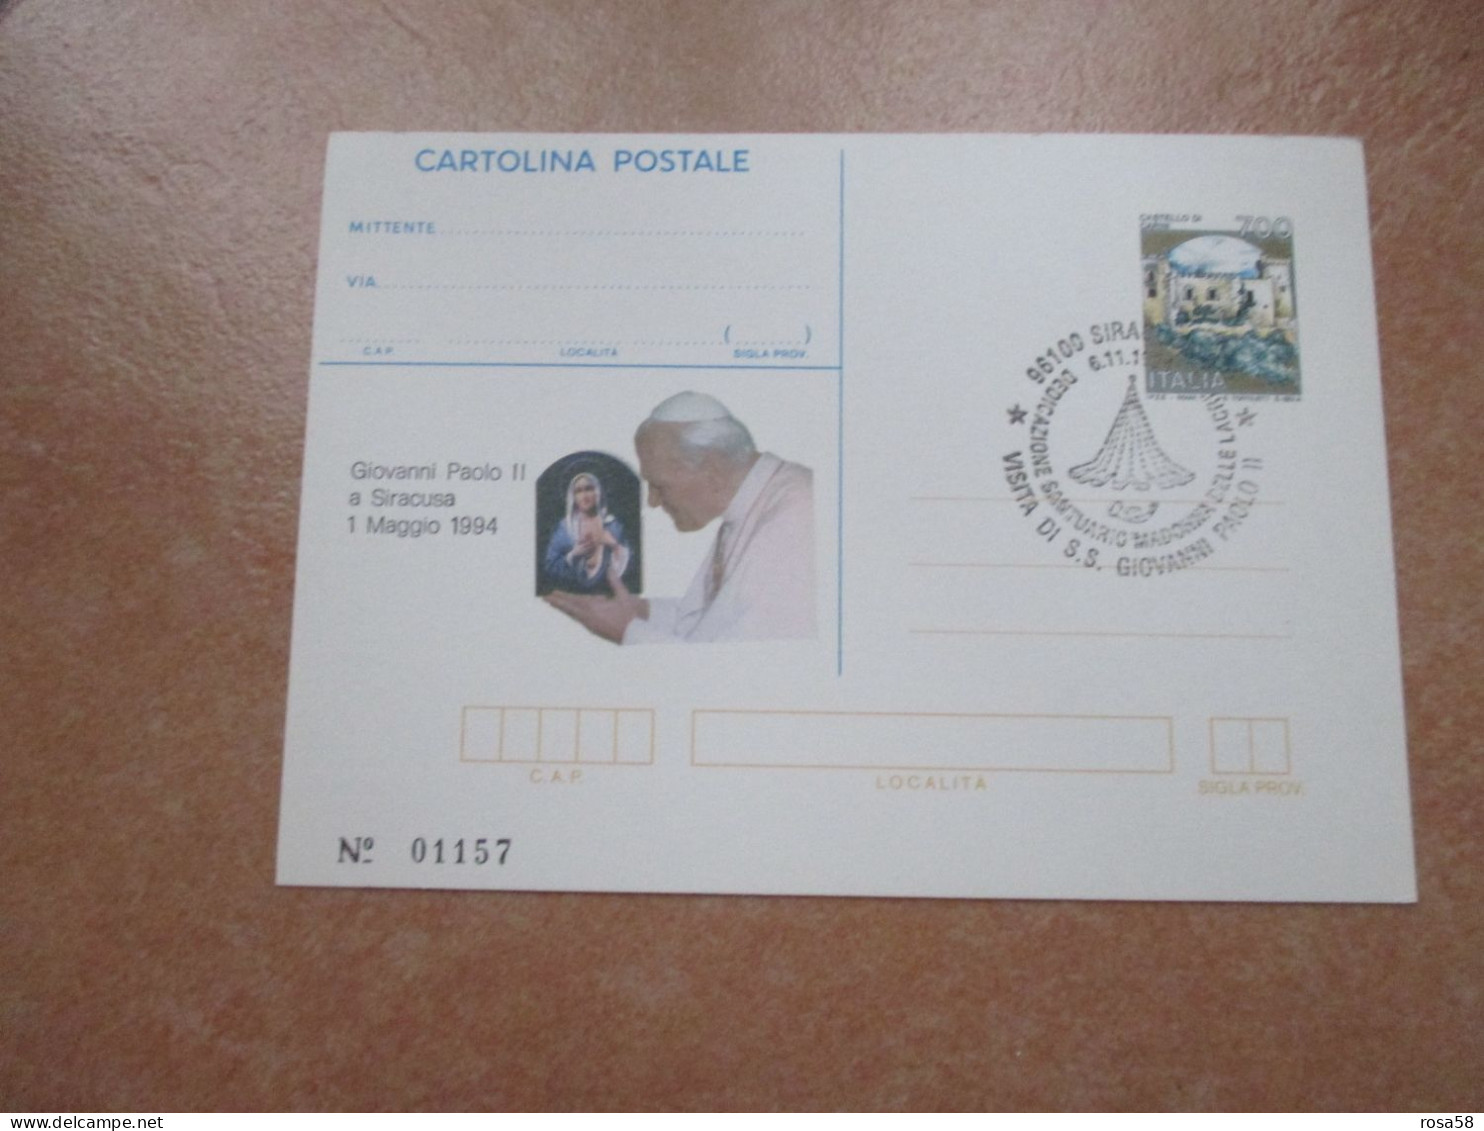 Cartolina Postale Numerata GIOVANNI PAOLO II A Siracusa 1 Maggio 1994 Tiratura Numerata Annullo Speciale - Cristianismo